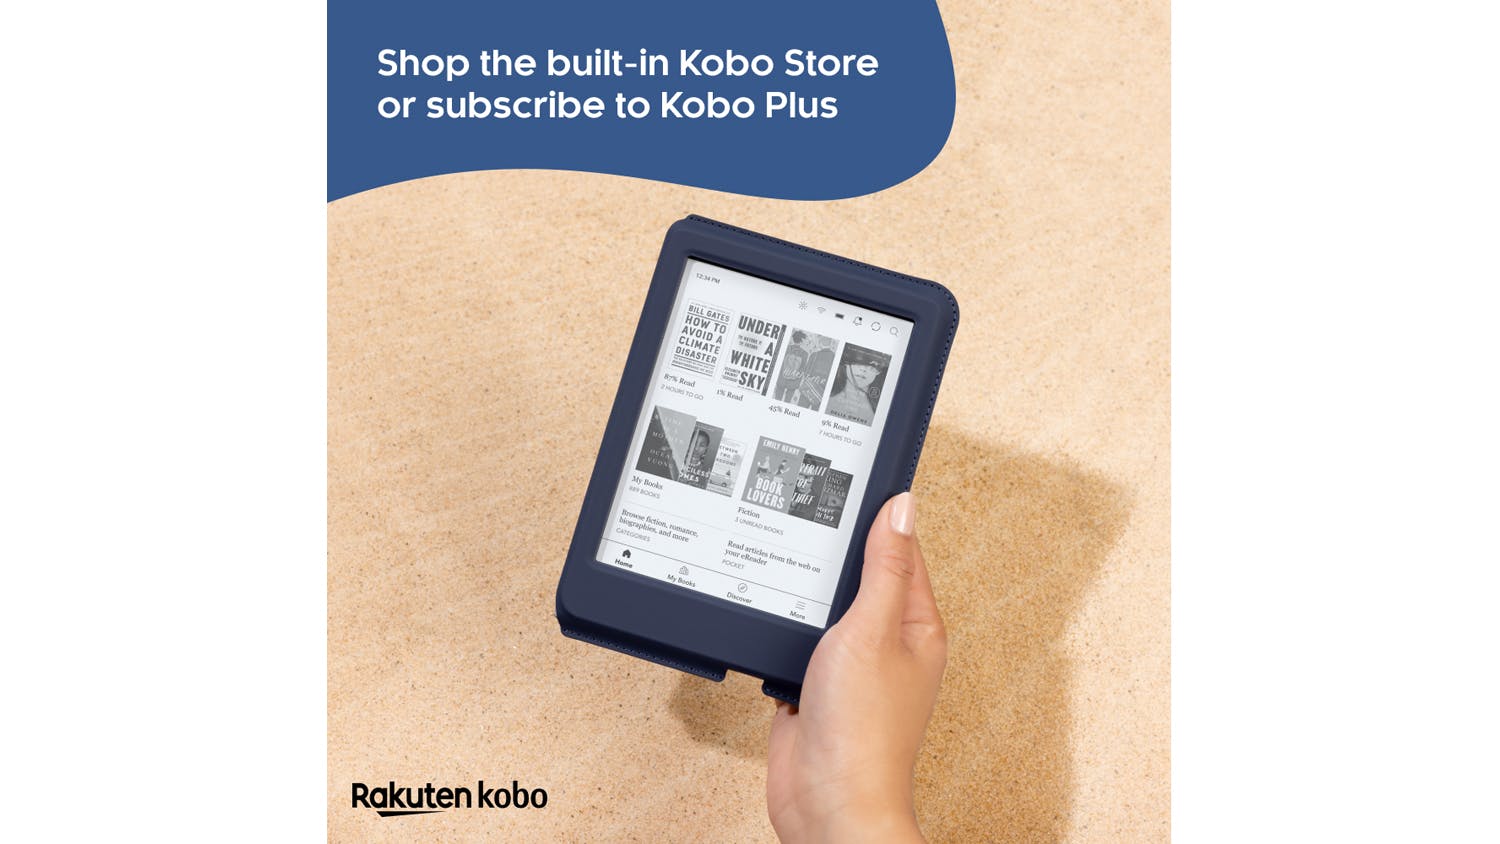 Rakuten Kobo Libra 2, Clara 2E and Kobo Nia eBook Reader Review